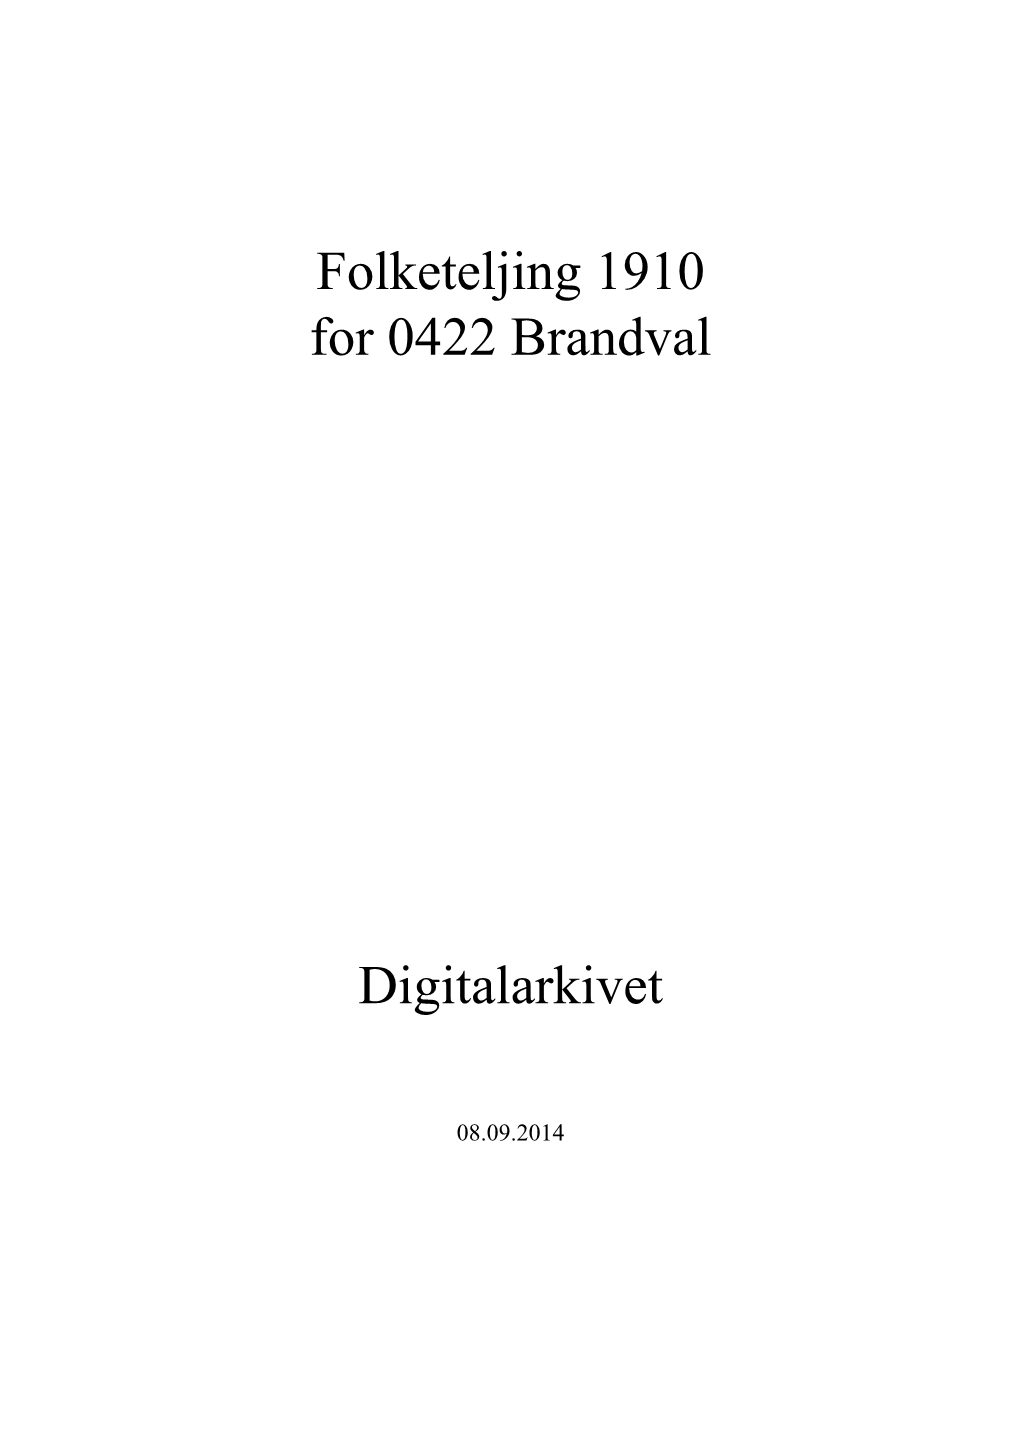 Folketeljing 1910 for 0422 Brandval Digitalarkivet